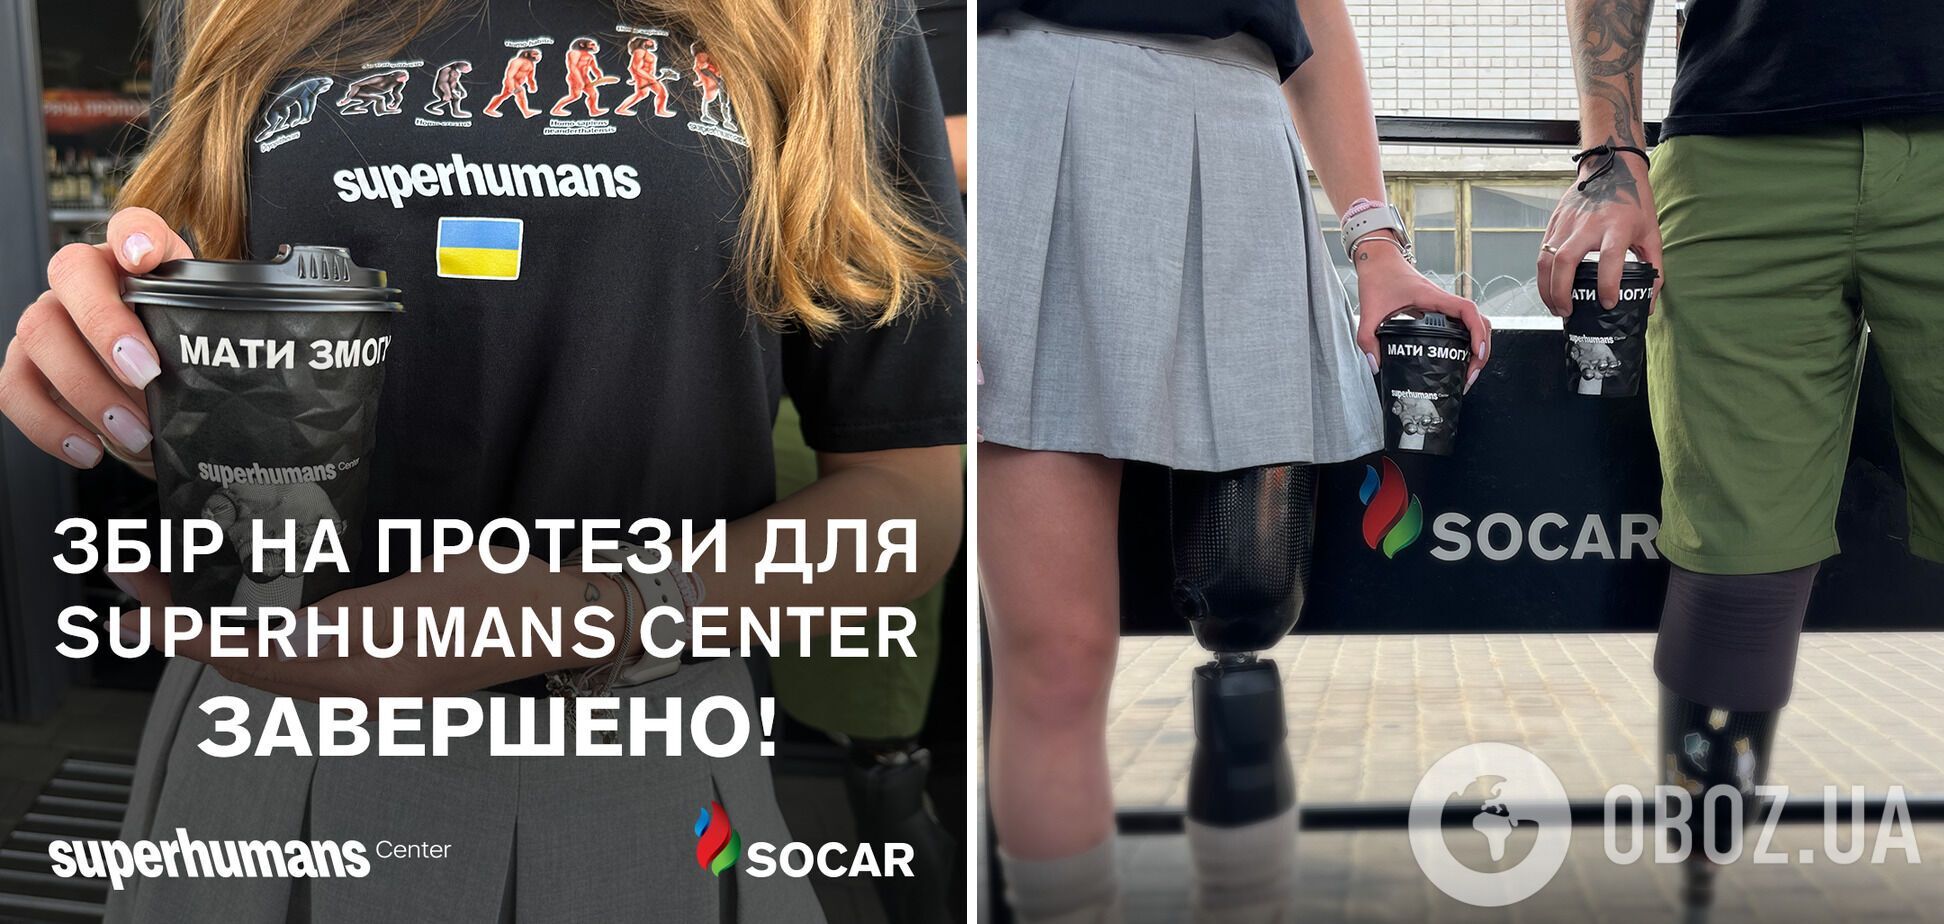 SOCAR: на высокофункциональные протезы для пострадавших украинцев собрано 1,5 млн грн 